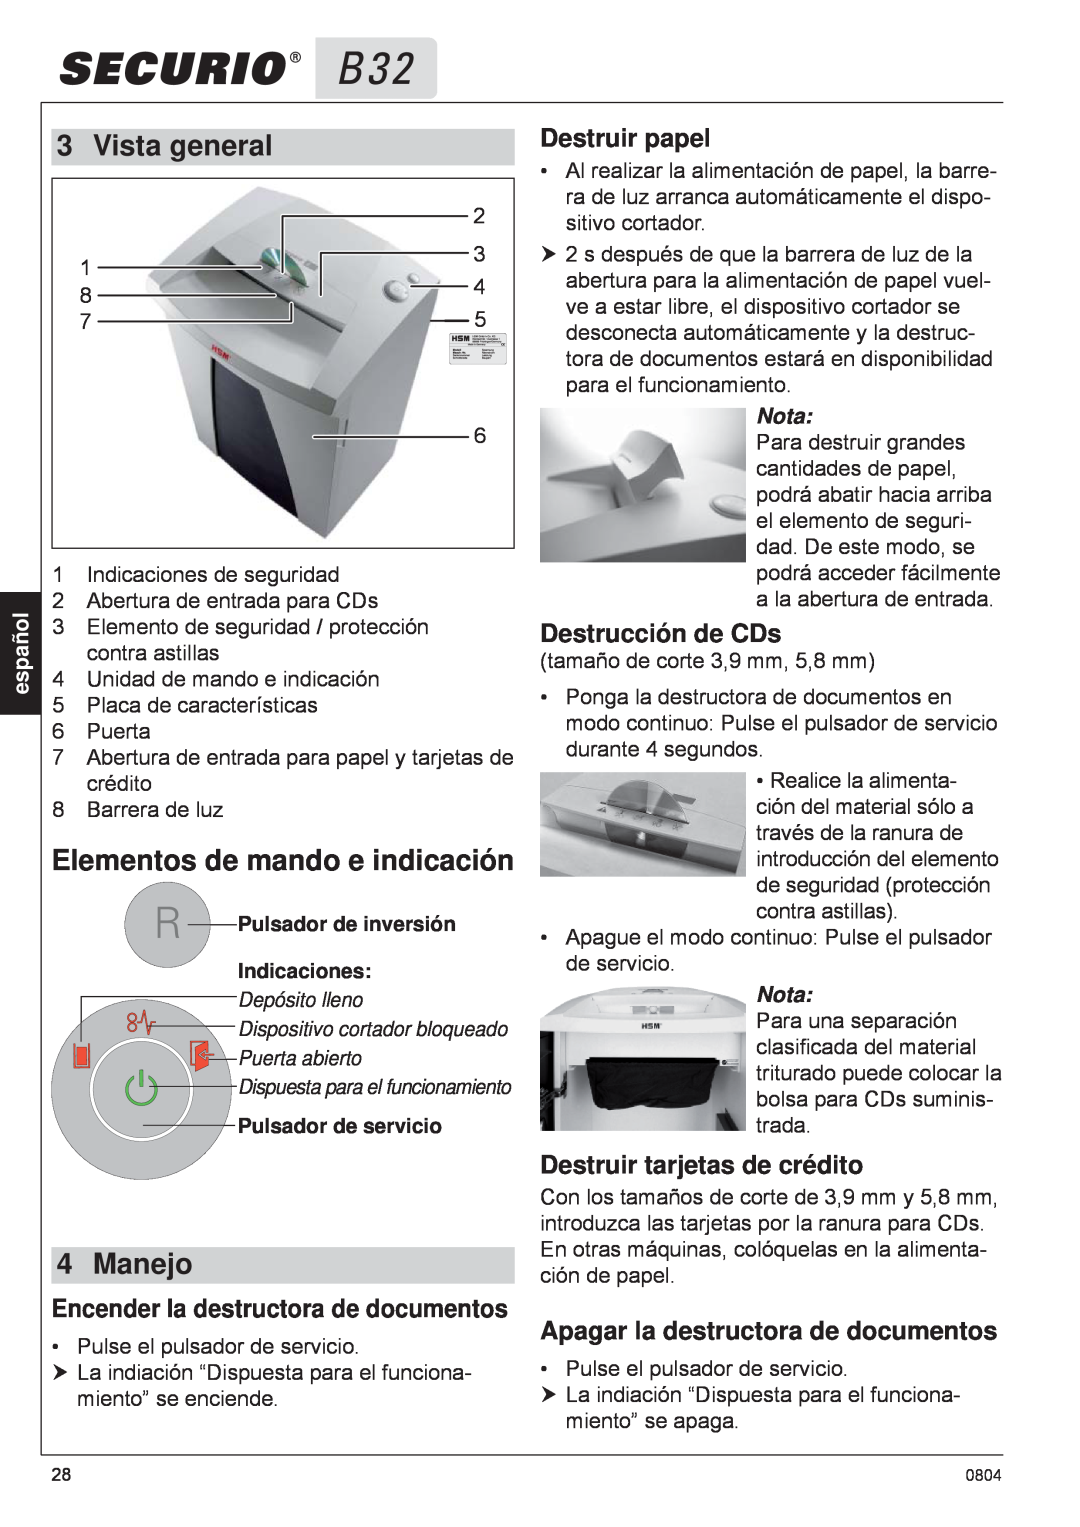 HSM B32 manual Vista general, Elementos de mando e indicación, Manejo, Destruir papel, Destrucción de CDs, español, Nota 